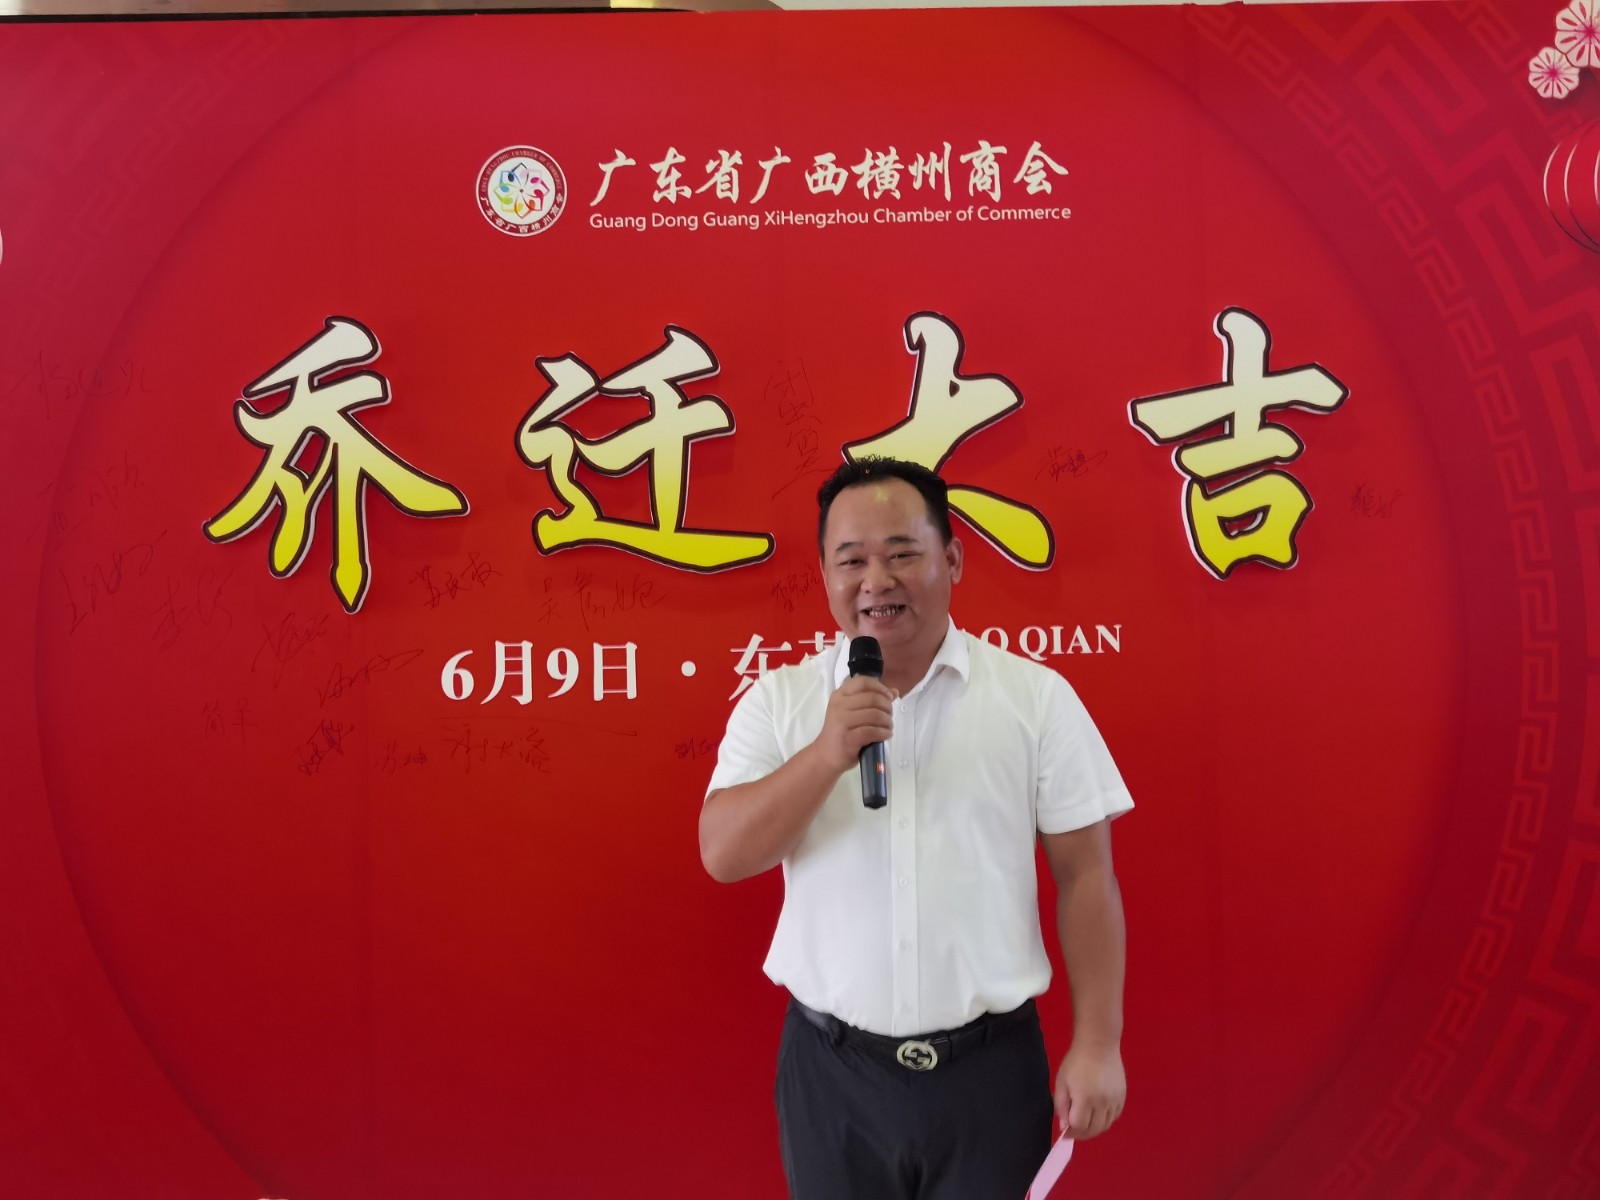 我商会会长肖明海出席 广东省广西横州商会乔迁仪式